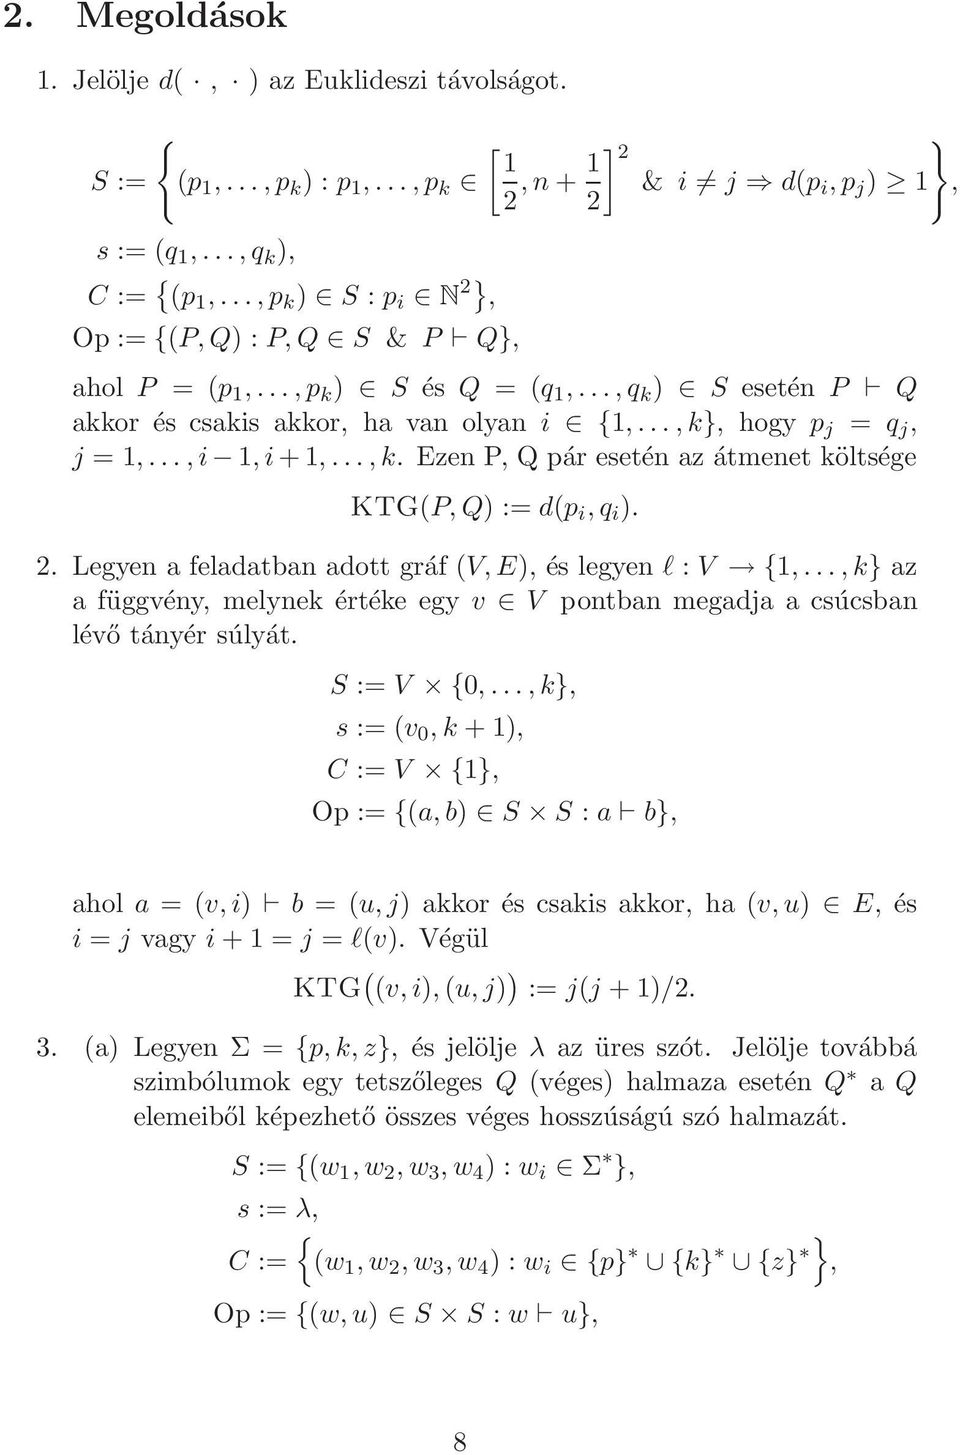 ..,k}, hogy p j = q j, j = 1,...,i 1,i+1,...,k. Ezen P, Q pár esetén az átmenet költsége KTG(P,Q) := d(p i,q i ). 2. Legyen a feladatban adott gráf (V,E), és legyen l : V {1,.